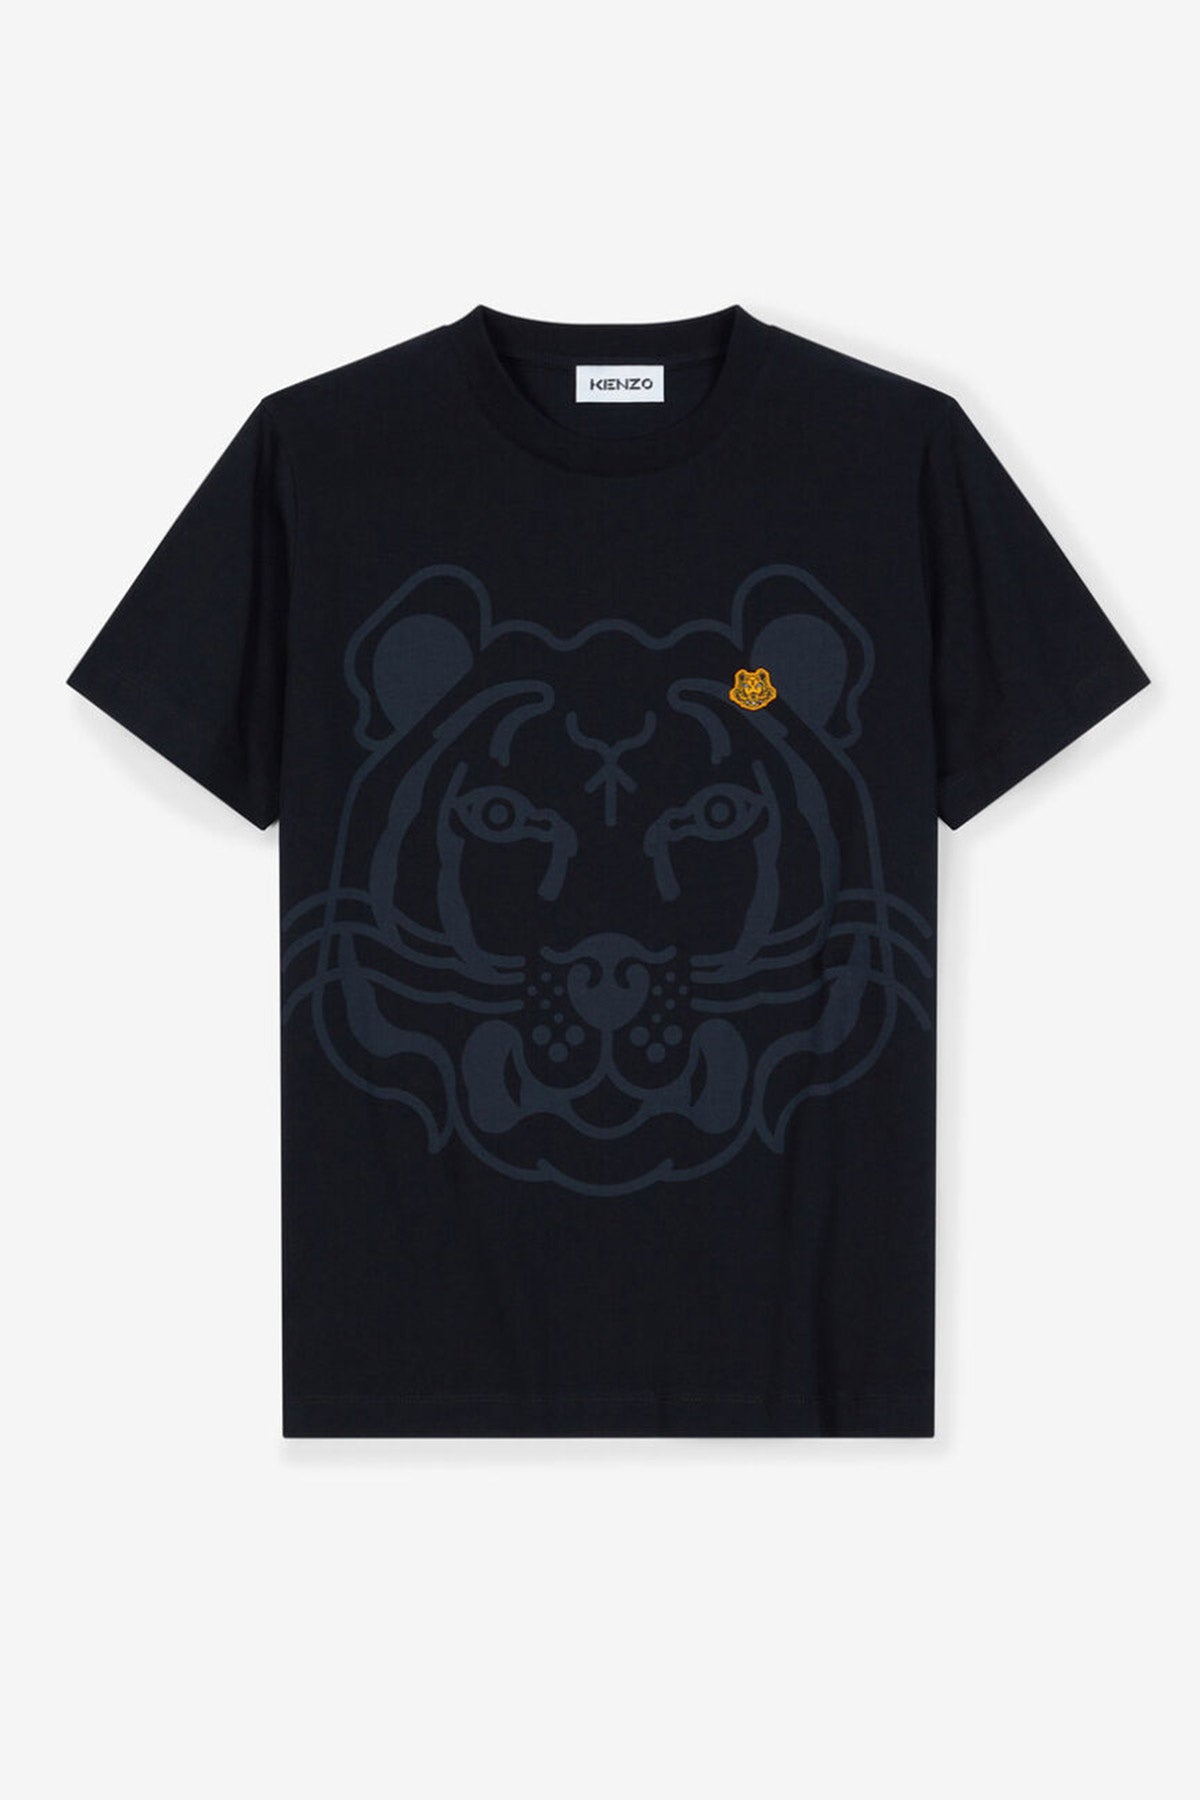 Kenzo Grafik Kaplan Logolu T-shirt-Libas Trendy Fashion Store